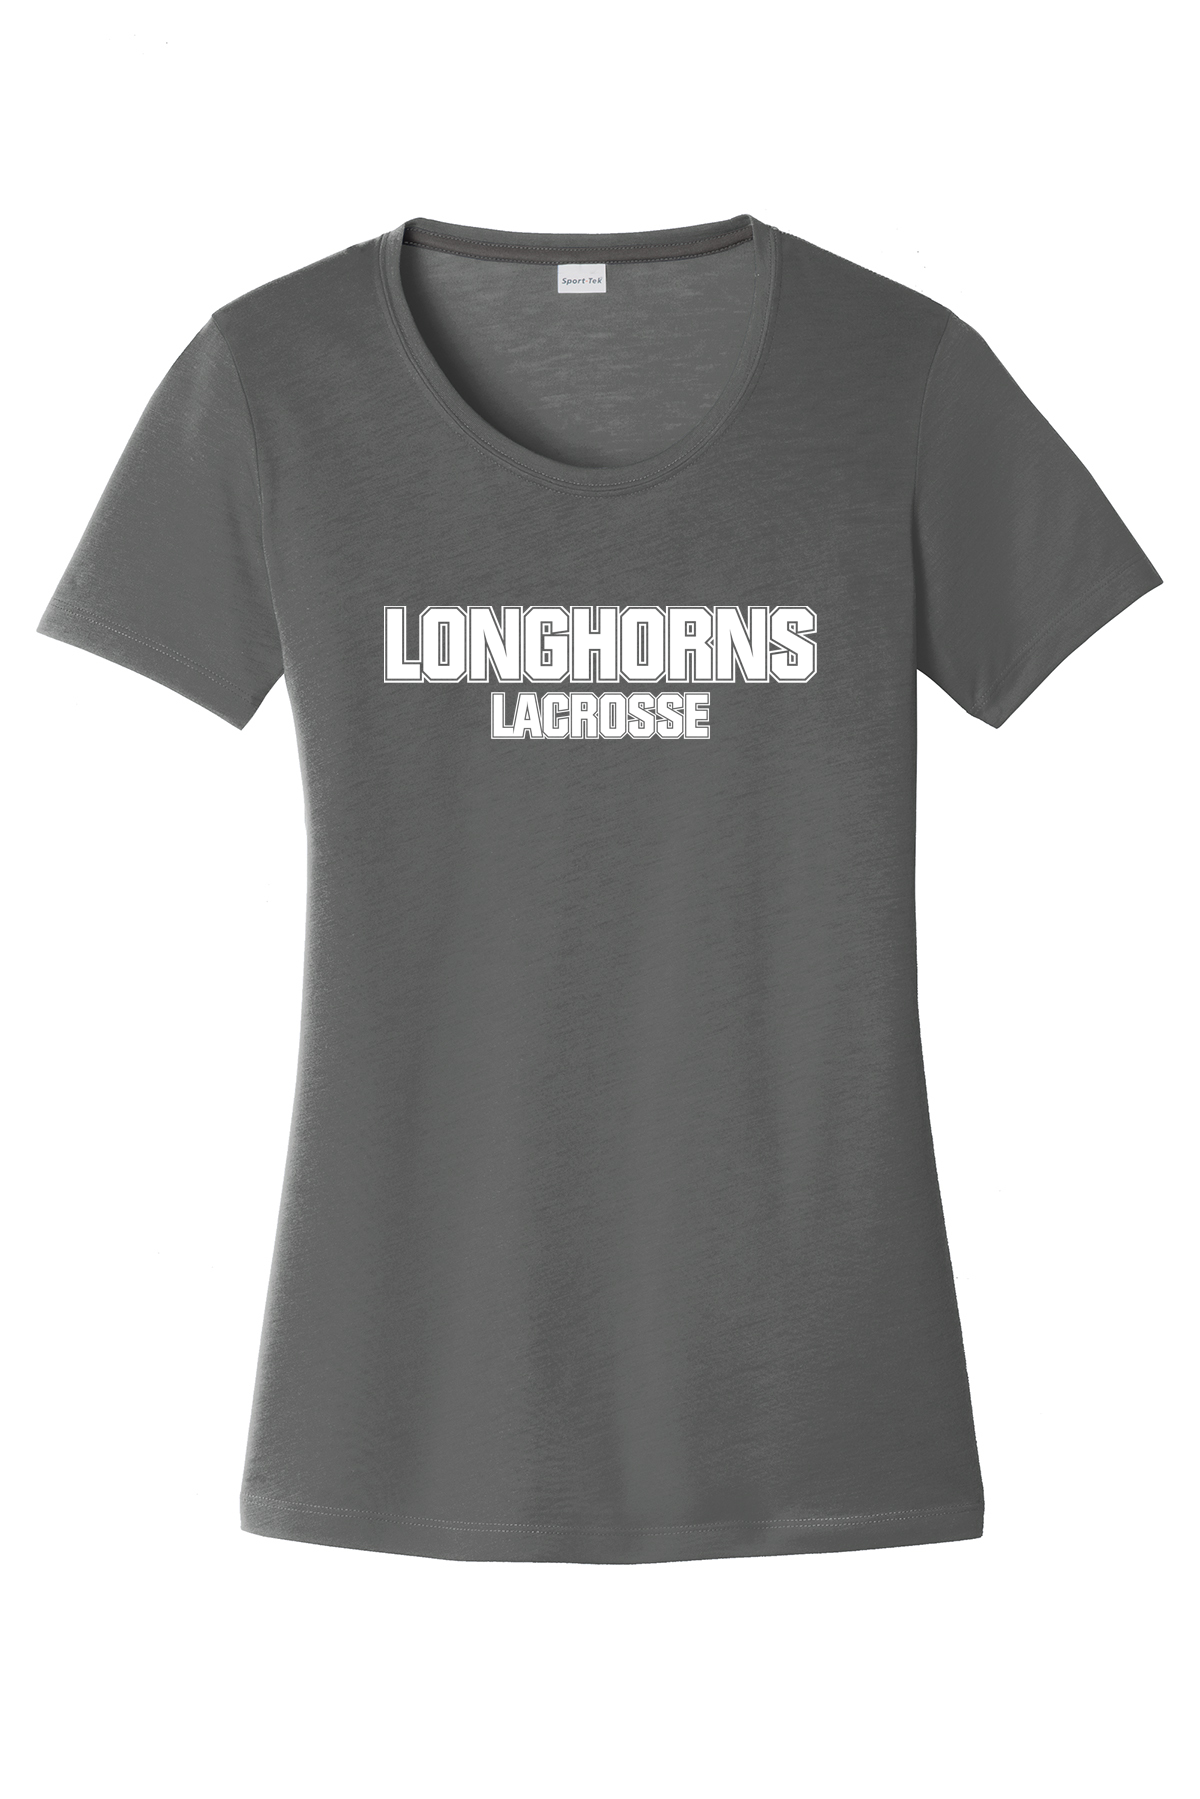 GR Longhorns Lacrosse Women's CottonTouch Performance T-Shirt